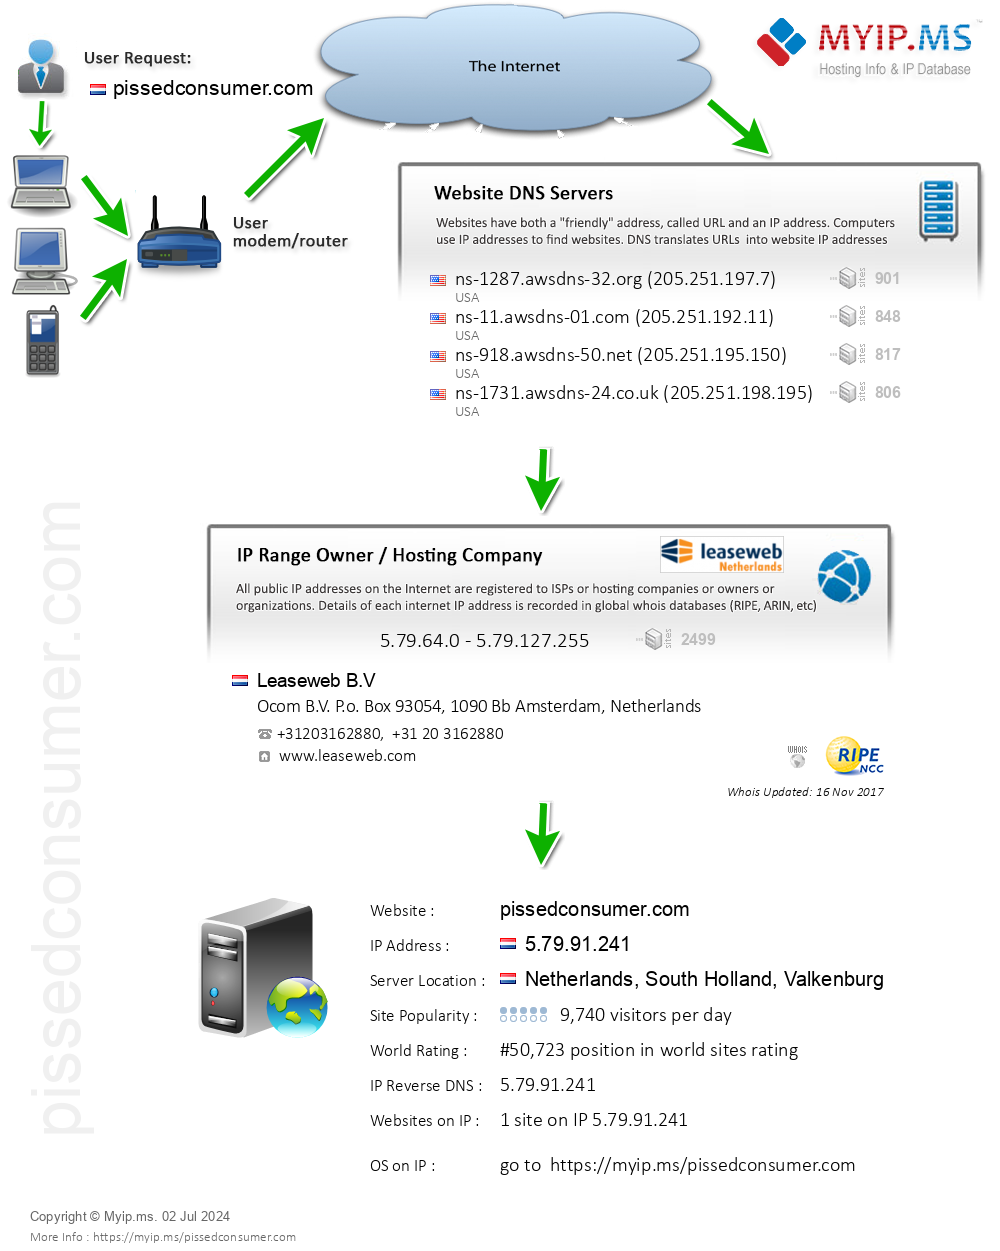 Pissedconsumer.com - Website Hosting Visual IP Diagram